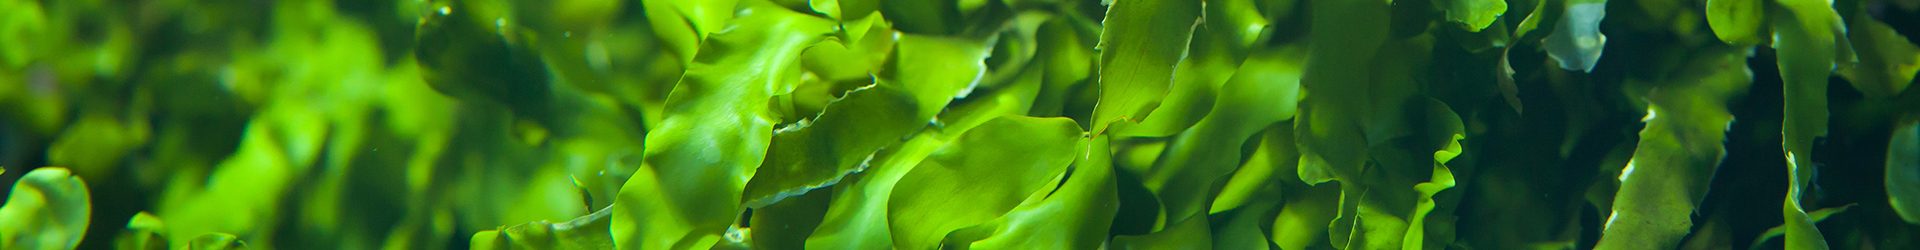 Green seaweed (Ulva compressa). Marine fish.